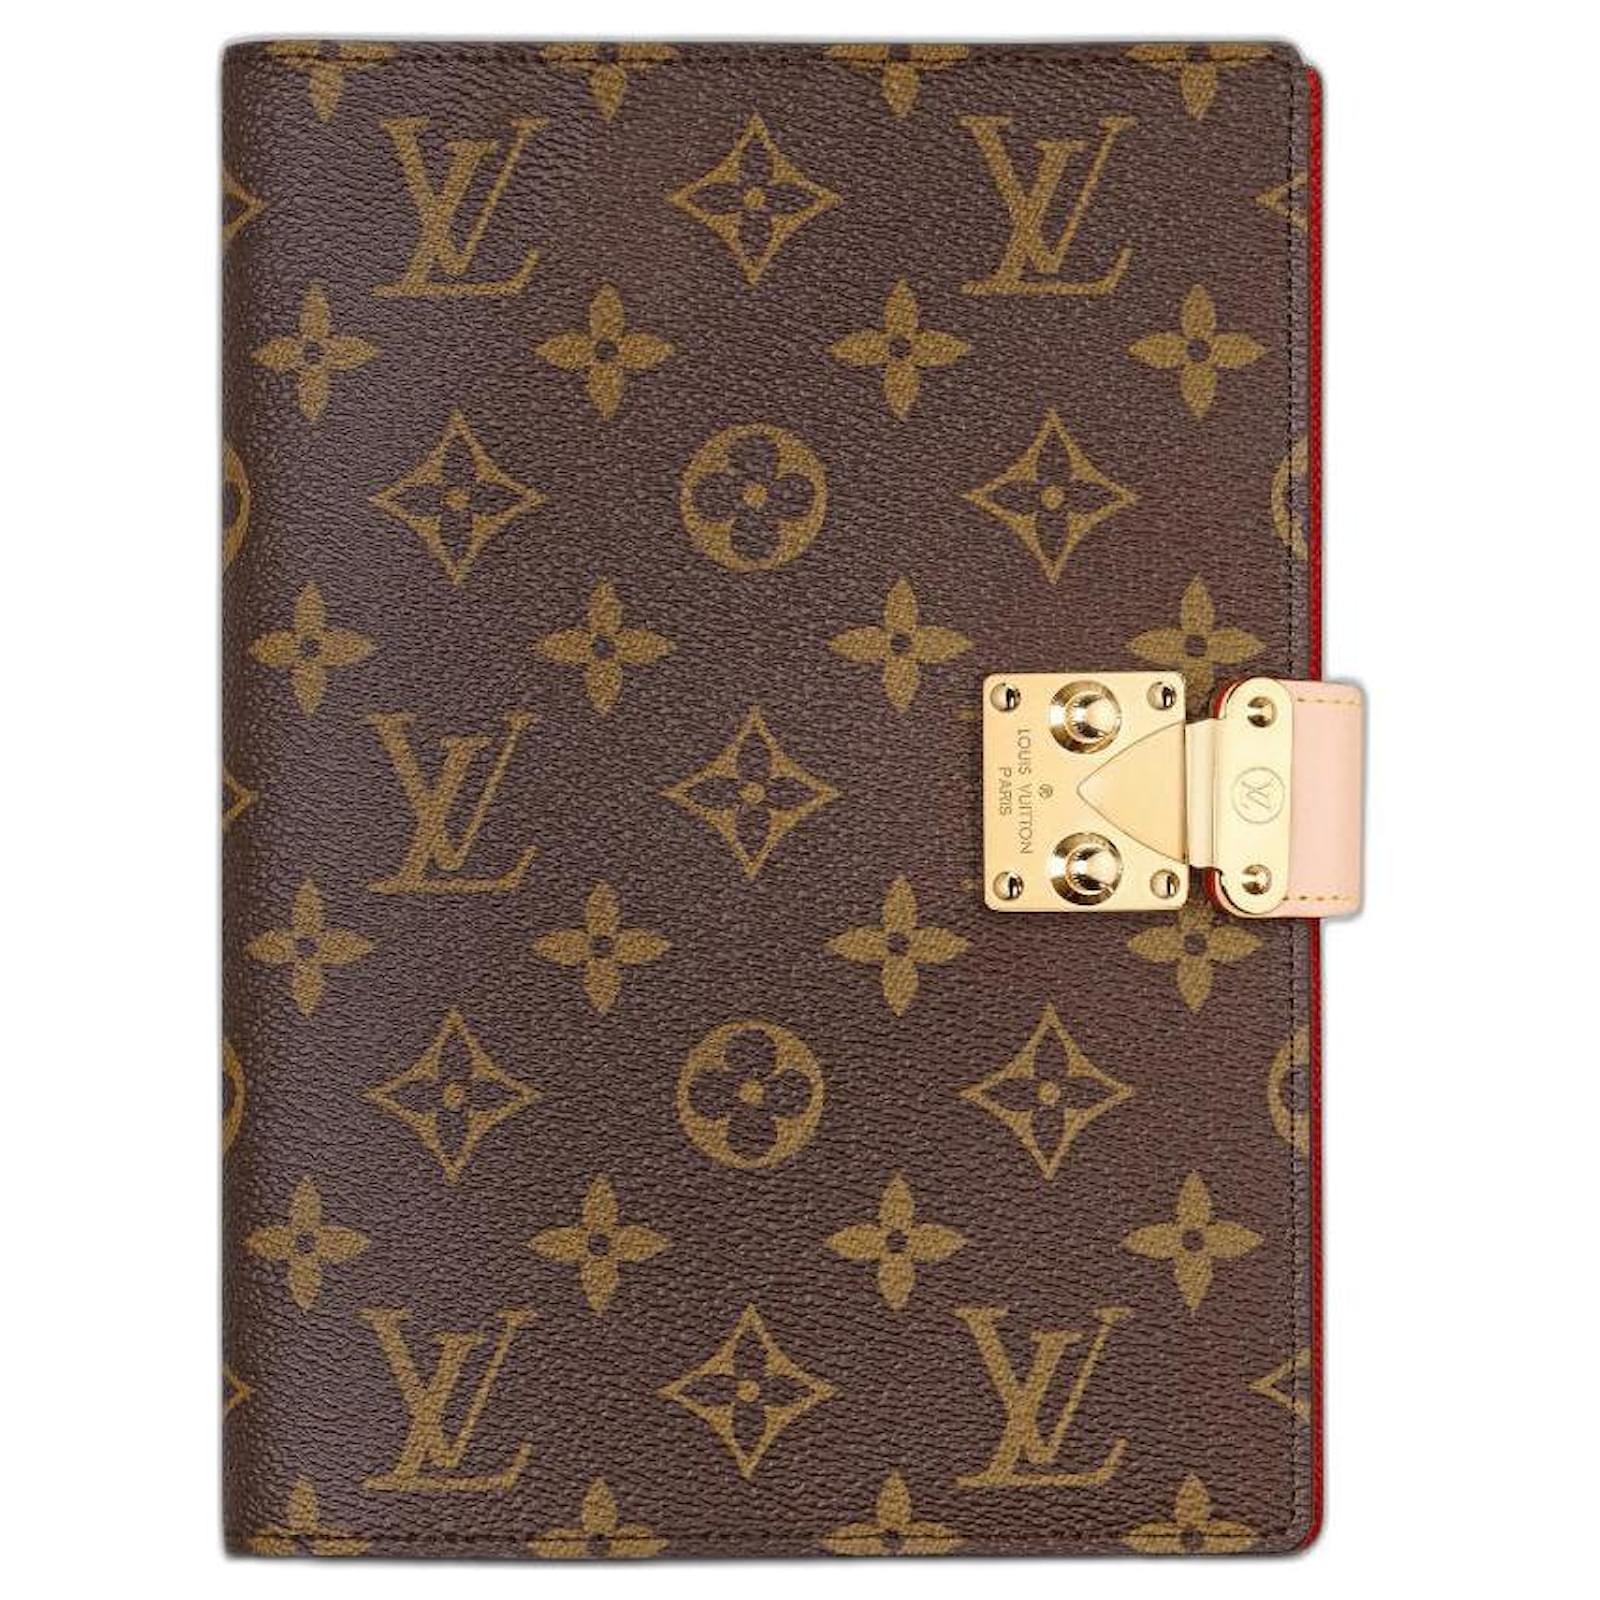 Louis Vuitton – Wikipédia, a enciclopédia livre